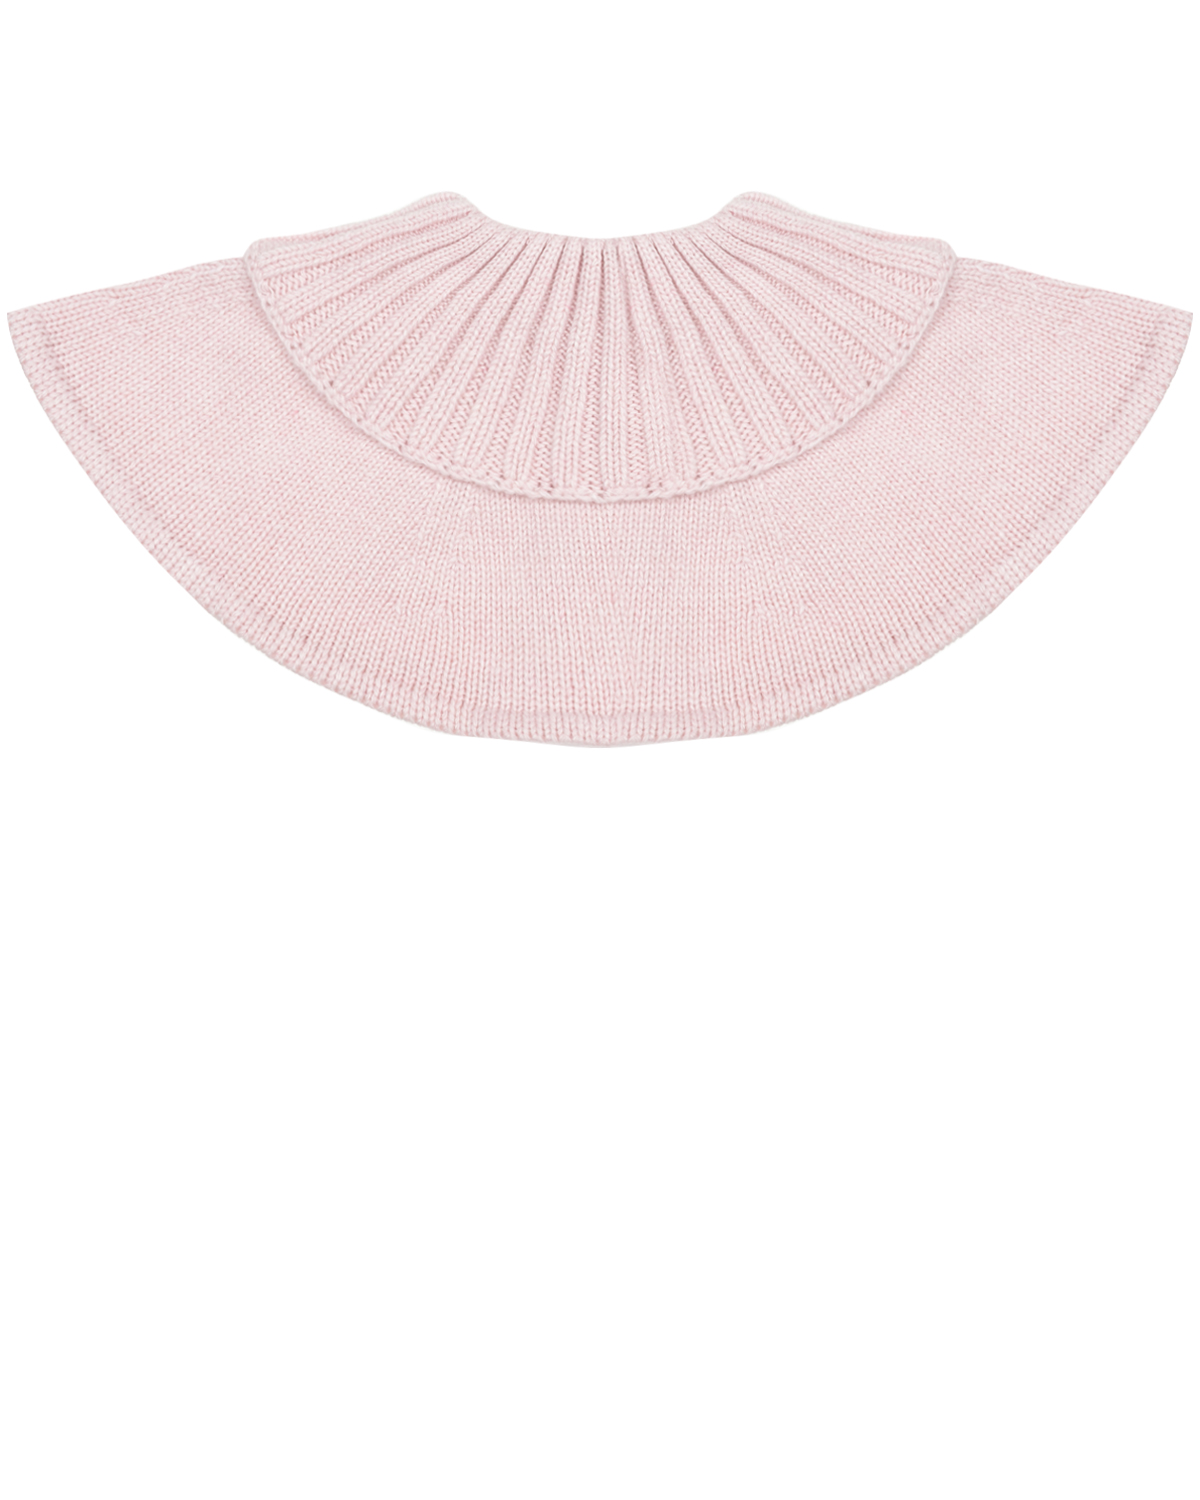 Розовый шарф-горло из кашемира Chobi детский, размер unica